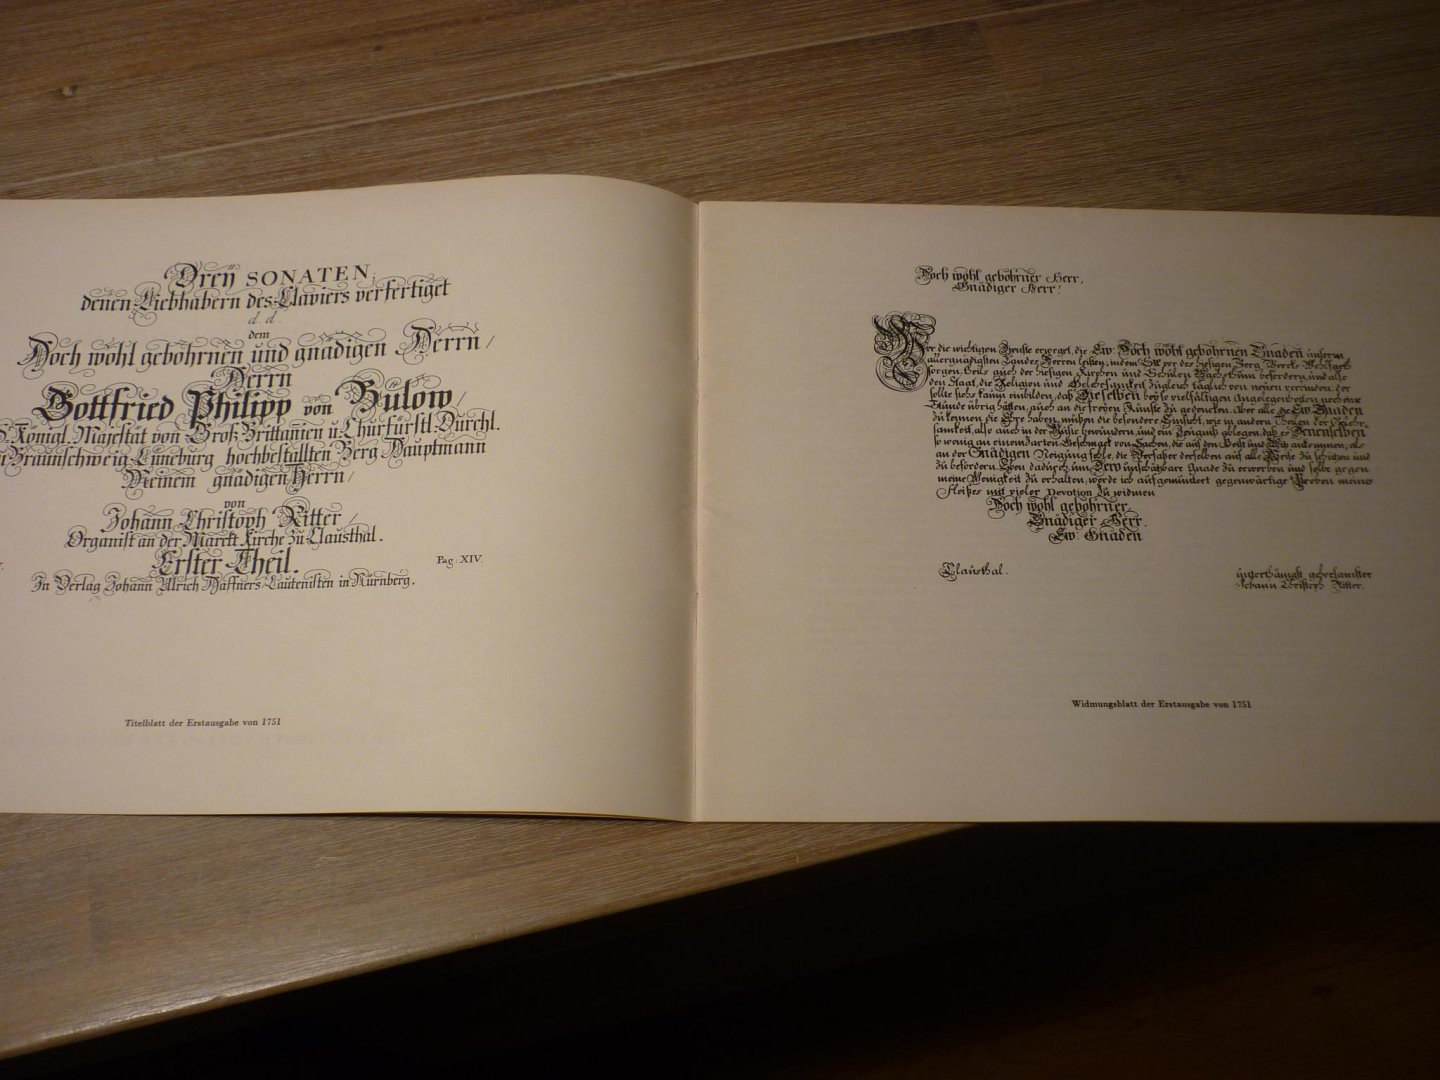 Ritter; Johann Christoph - Drei Sonaten fur Cembalo, nach der Erstausgabe von 1751 herausgegeben - Vorwort Erwin R. Jacobi